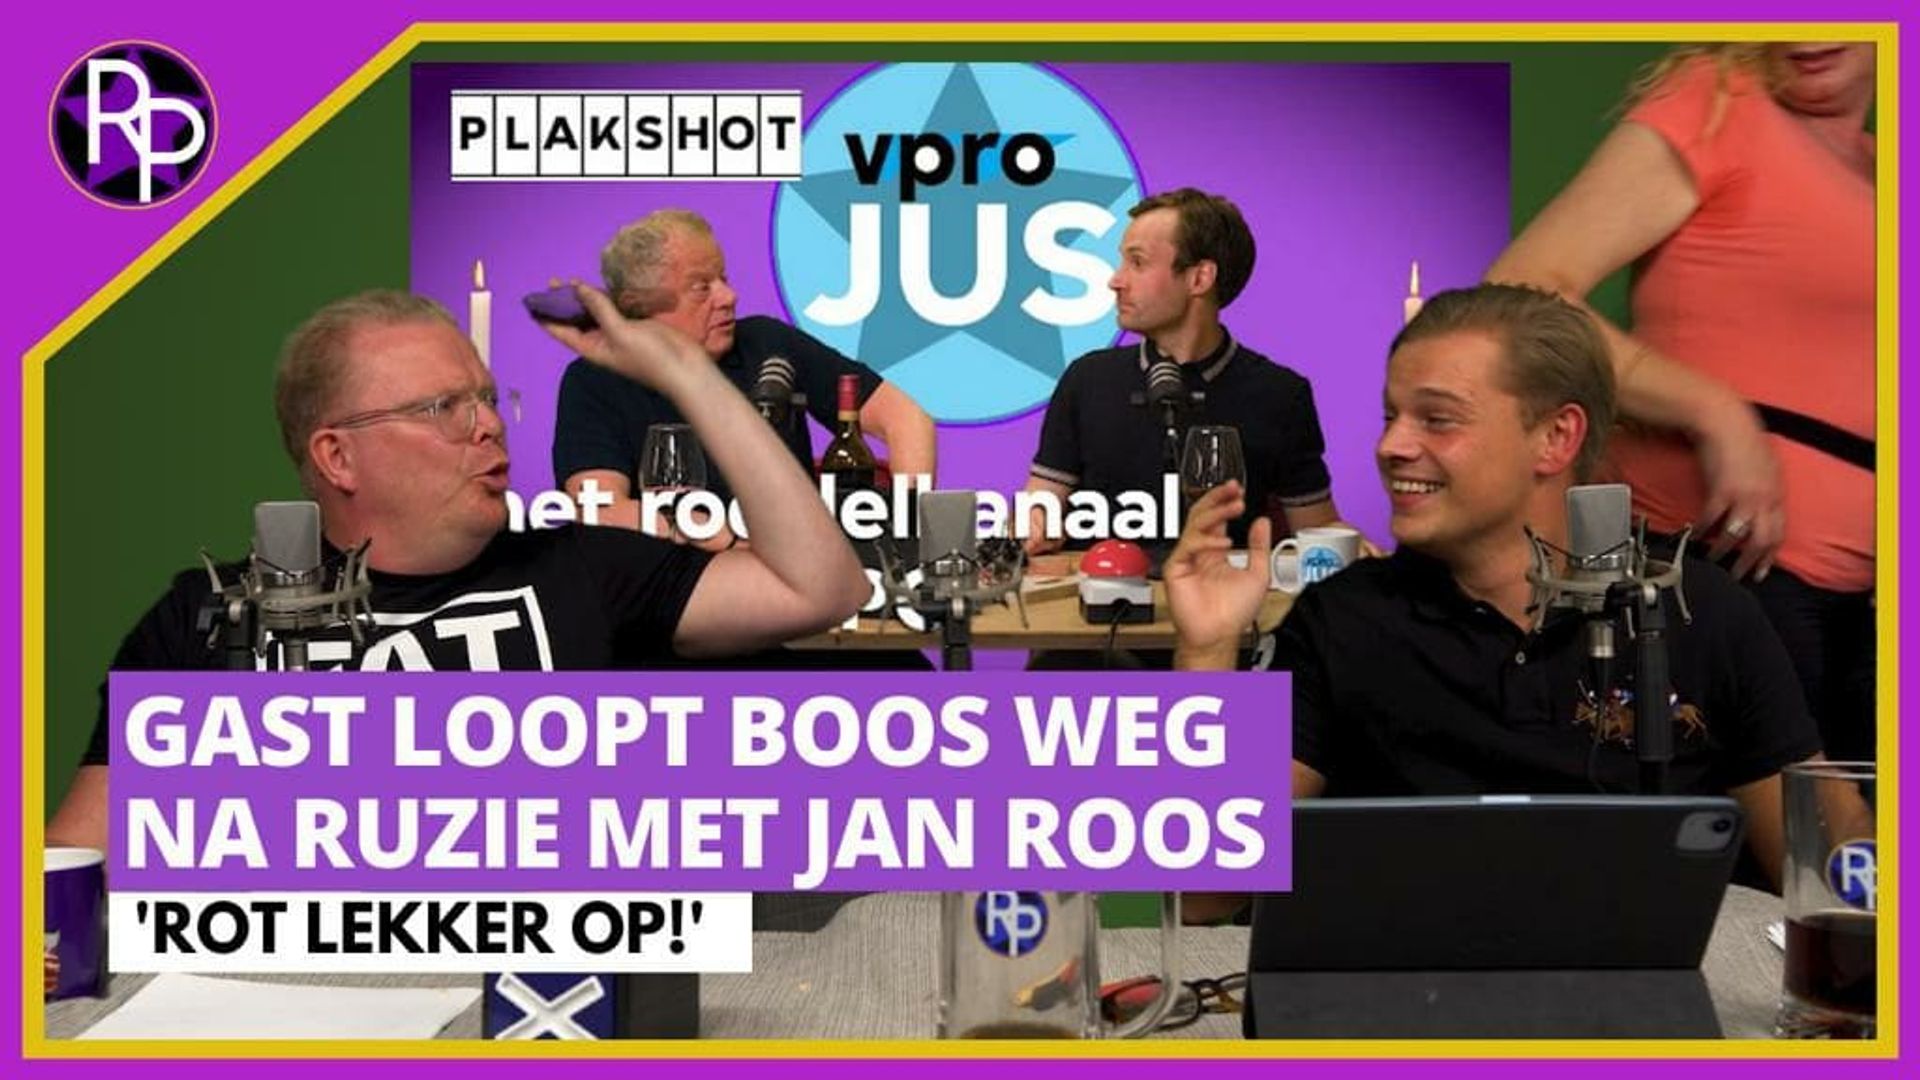 BN'er loopt boos weg na ruzie met Jan Roos | RoddelPraat